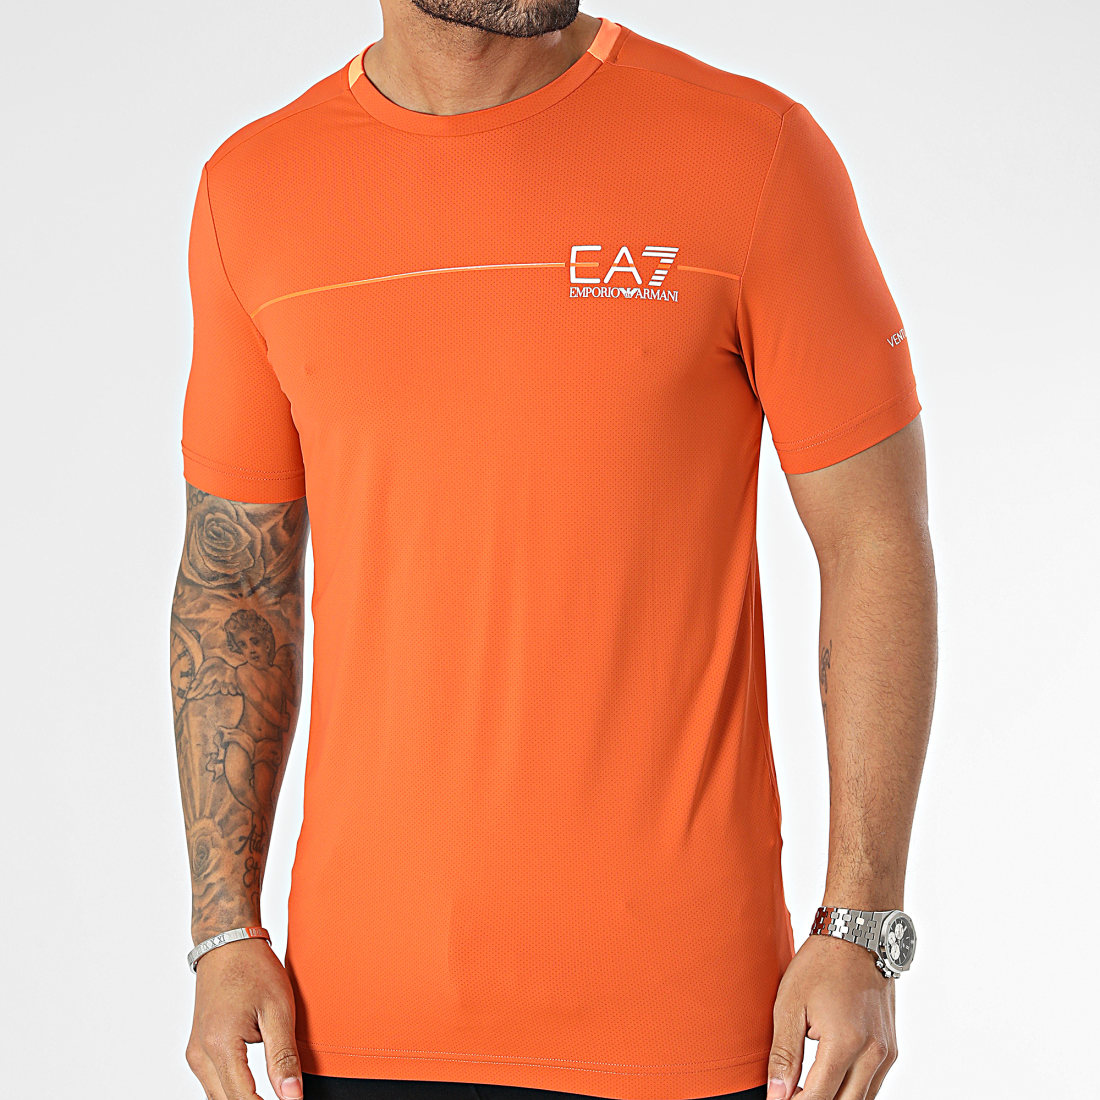 EA7 Emporio Armani - Tee Shirt 3RPT30-PJEMZ Orange -  